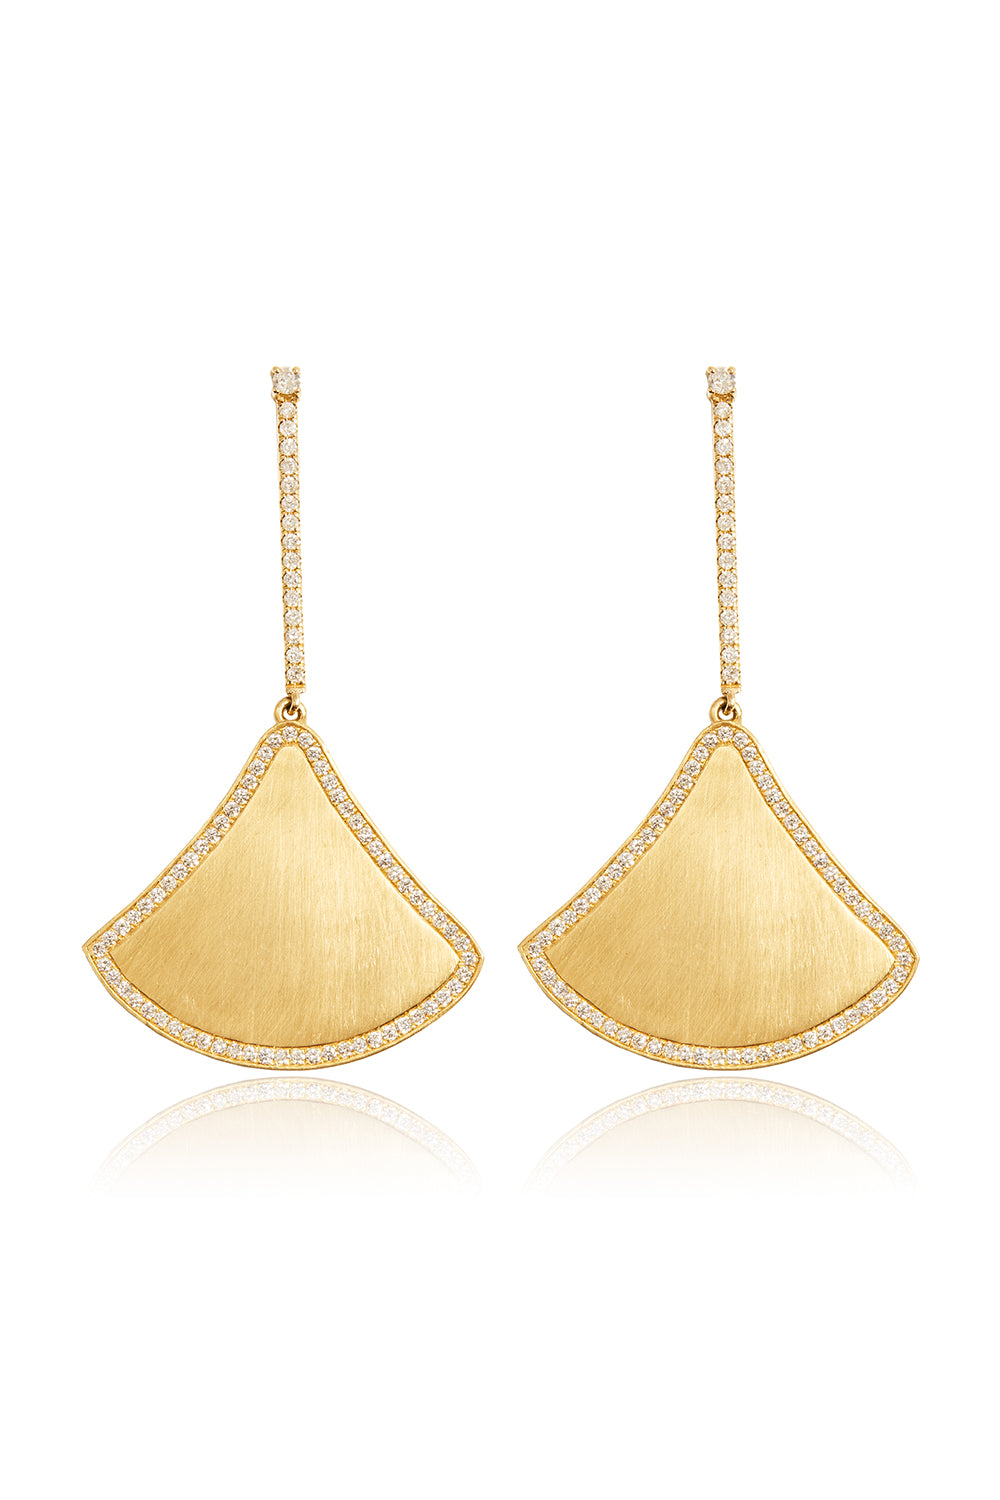 L.A. STEIN Diamond Kite Earrings in Matte 18k Yellow Gold